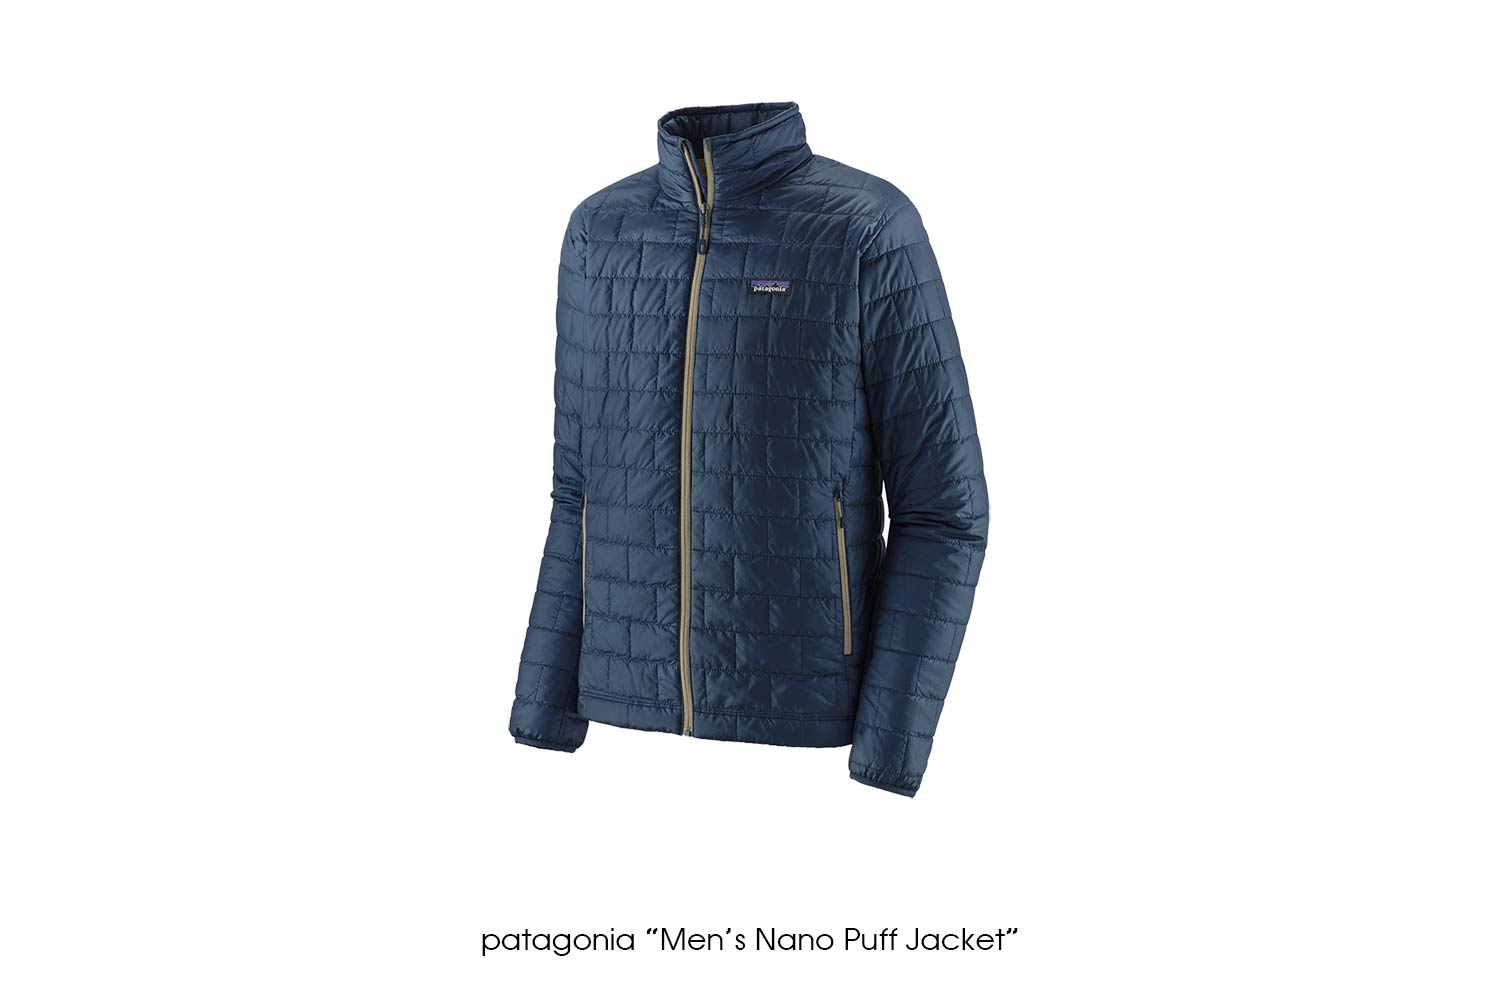 patagonia "Men's Nano Puff Jacket"